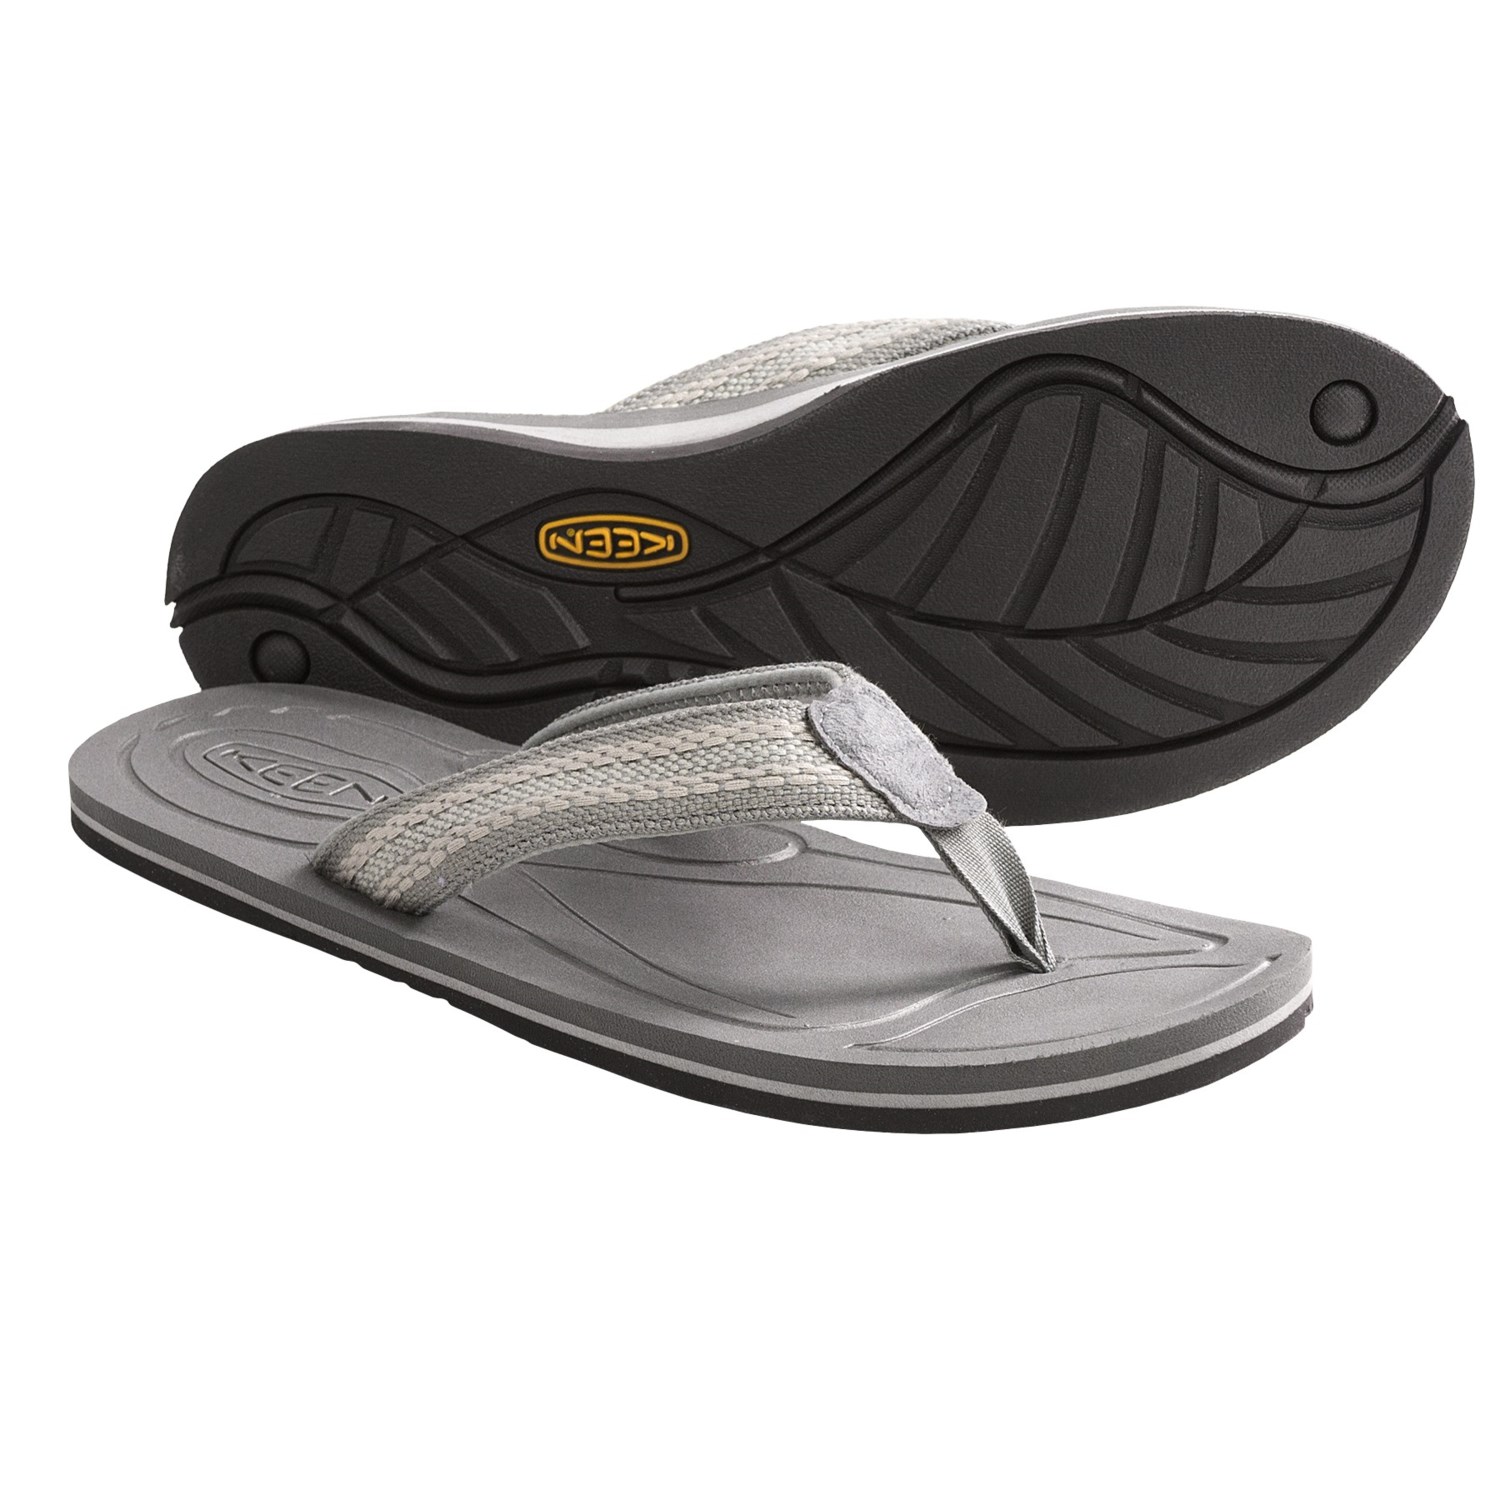 Keen Veracruz Sandals - Flip-Flops (For Men) in GargoyleNeutral Grey